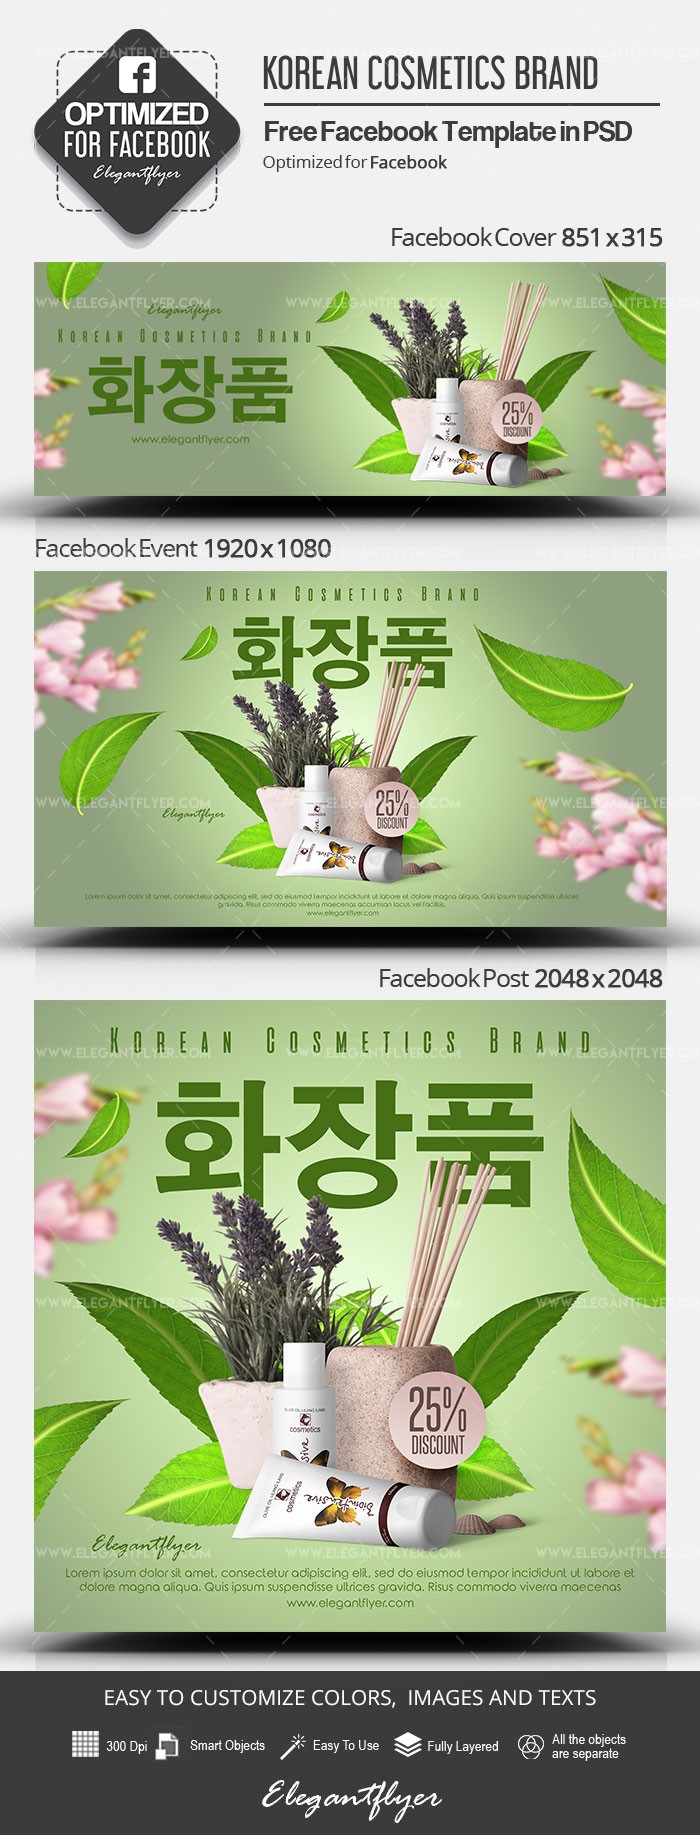 Marca de cosméticos coreanos no Facebook by ElegantFlyer